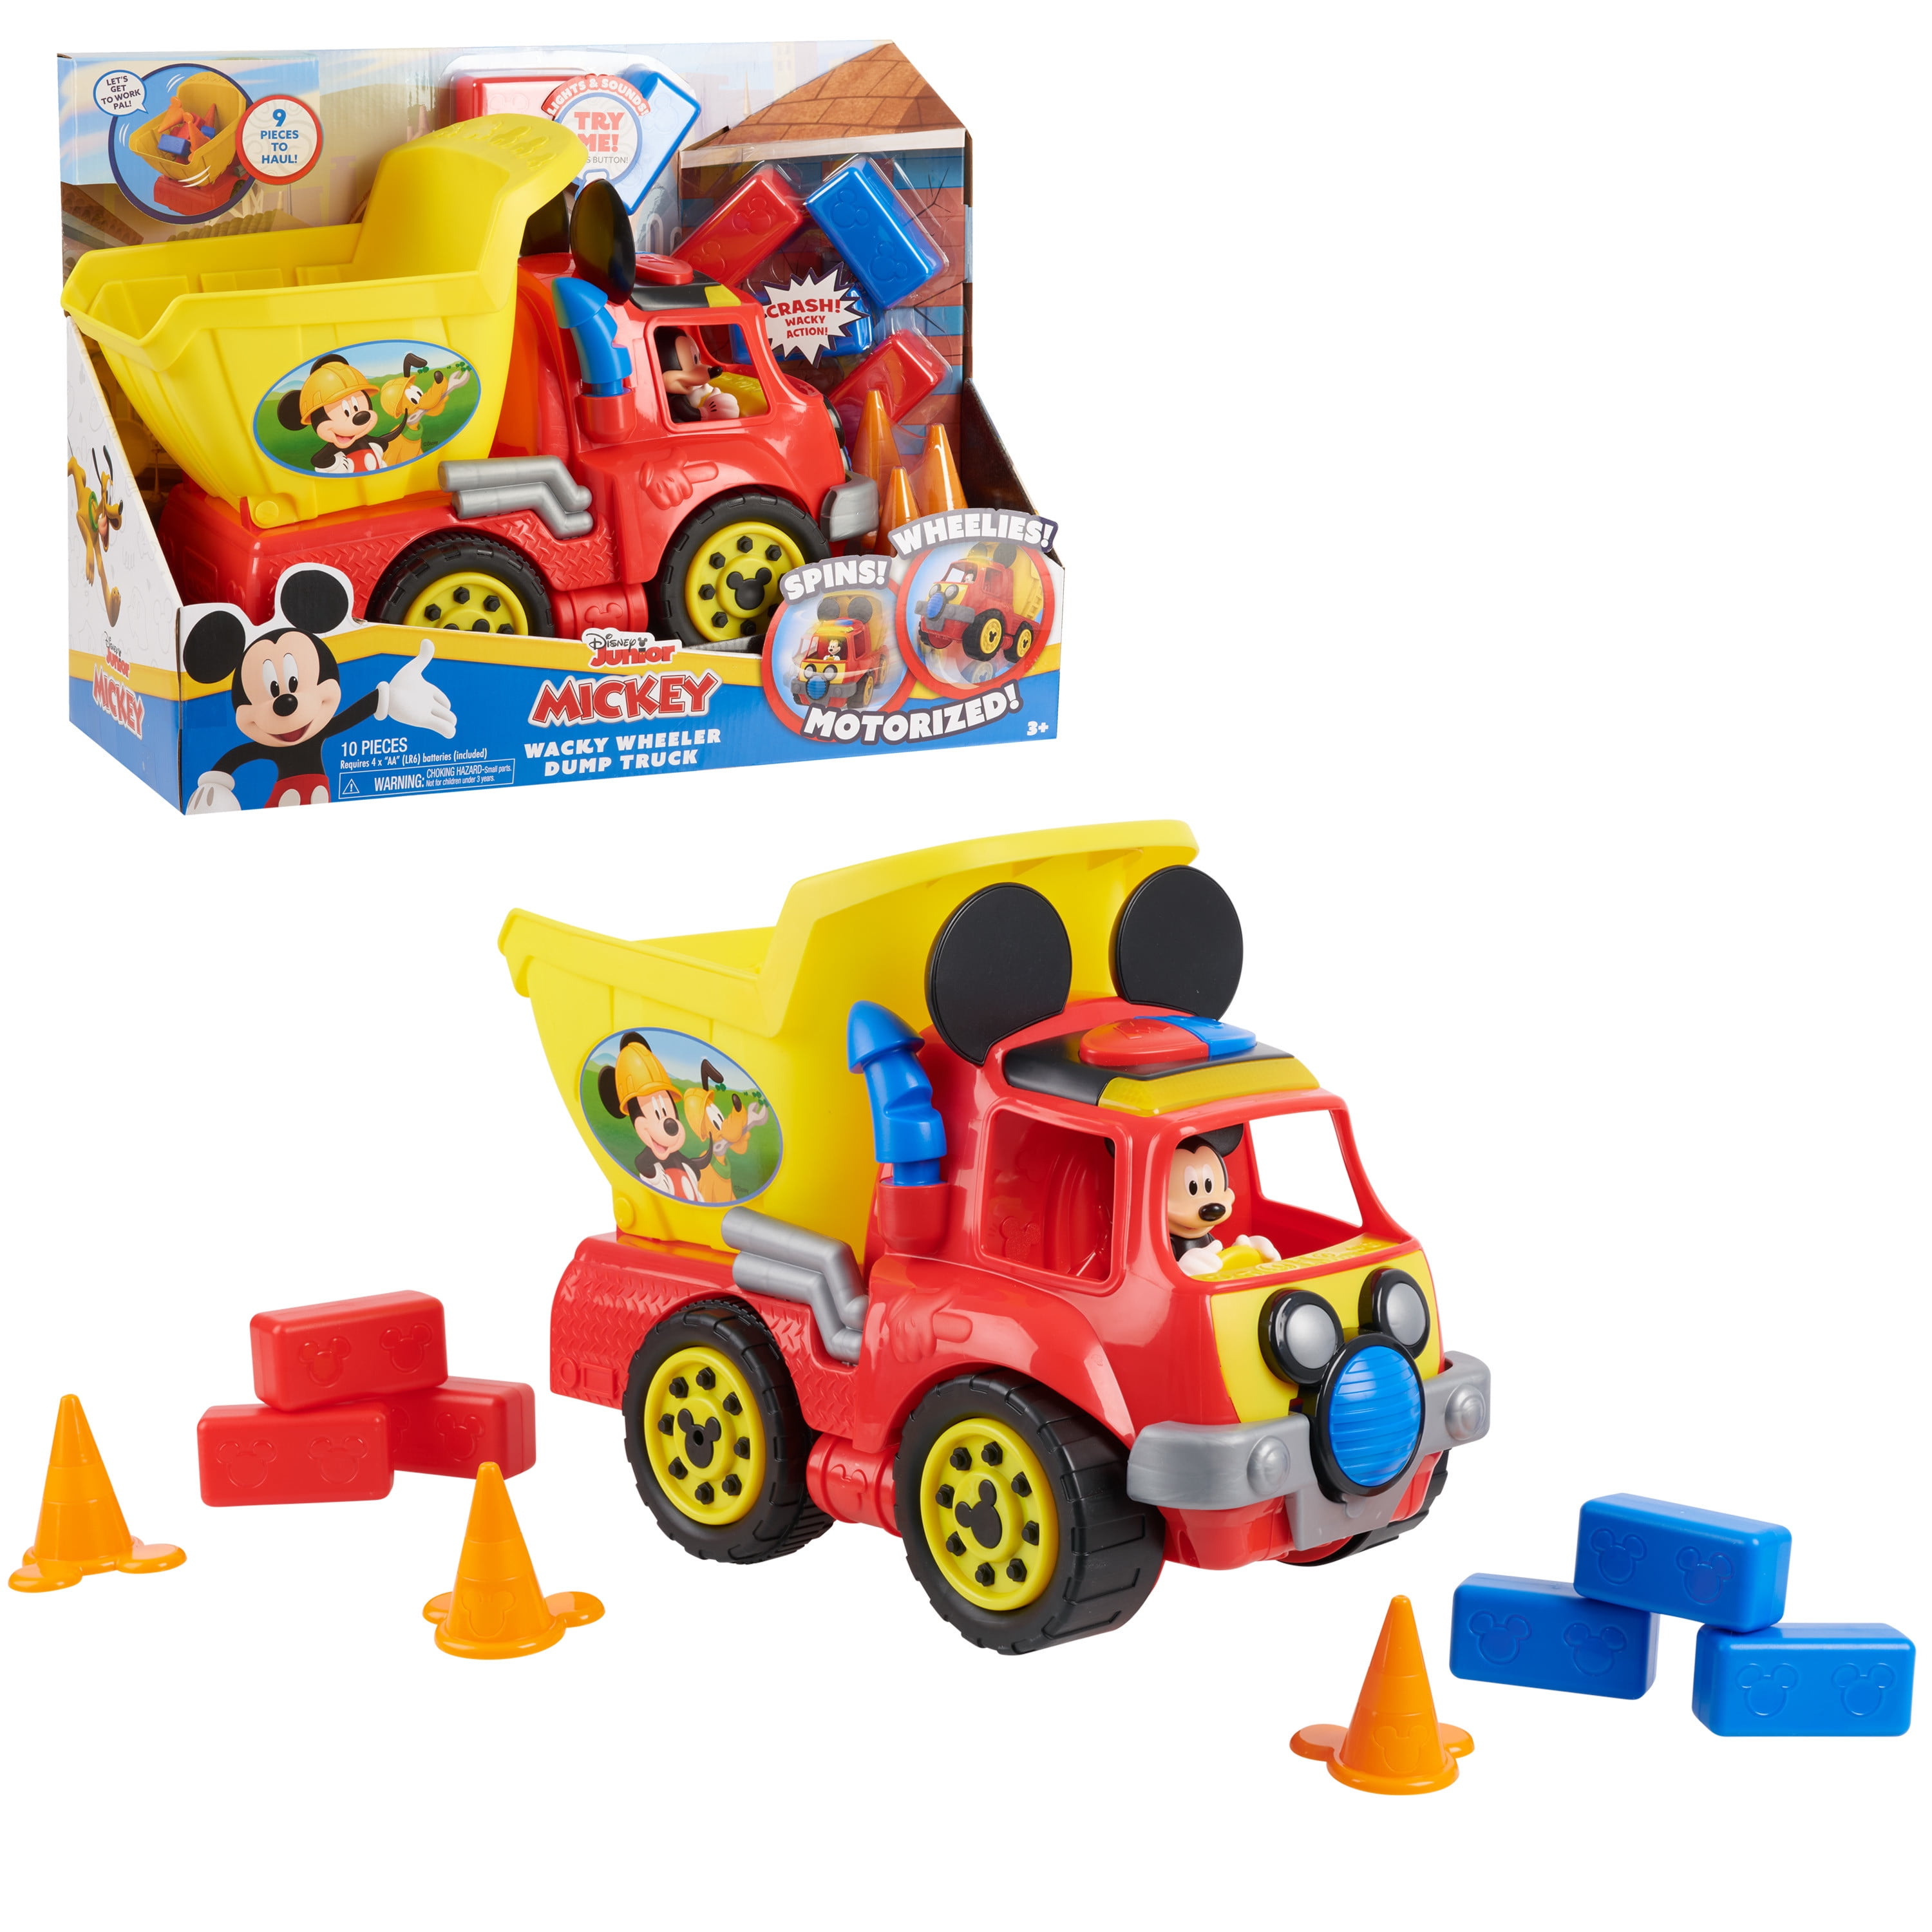 2pk Build Your Own Construction & Truck Set Kids Blocks Entertainment DIY Toy 